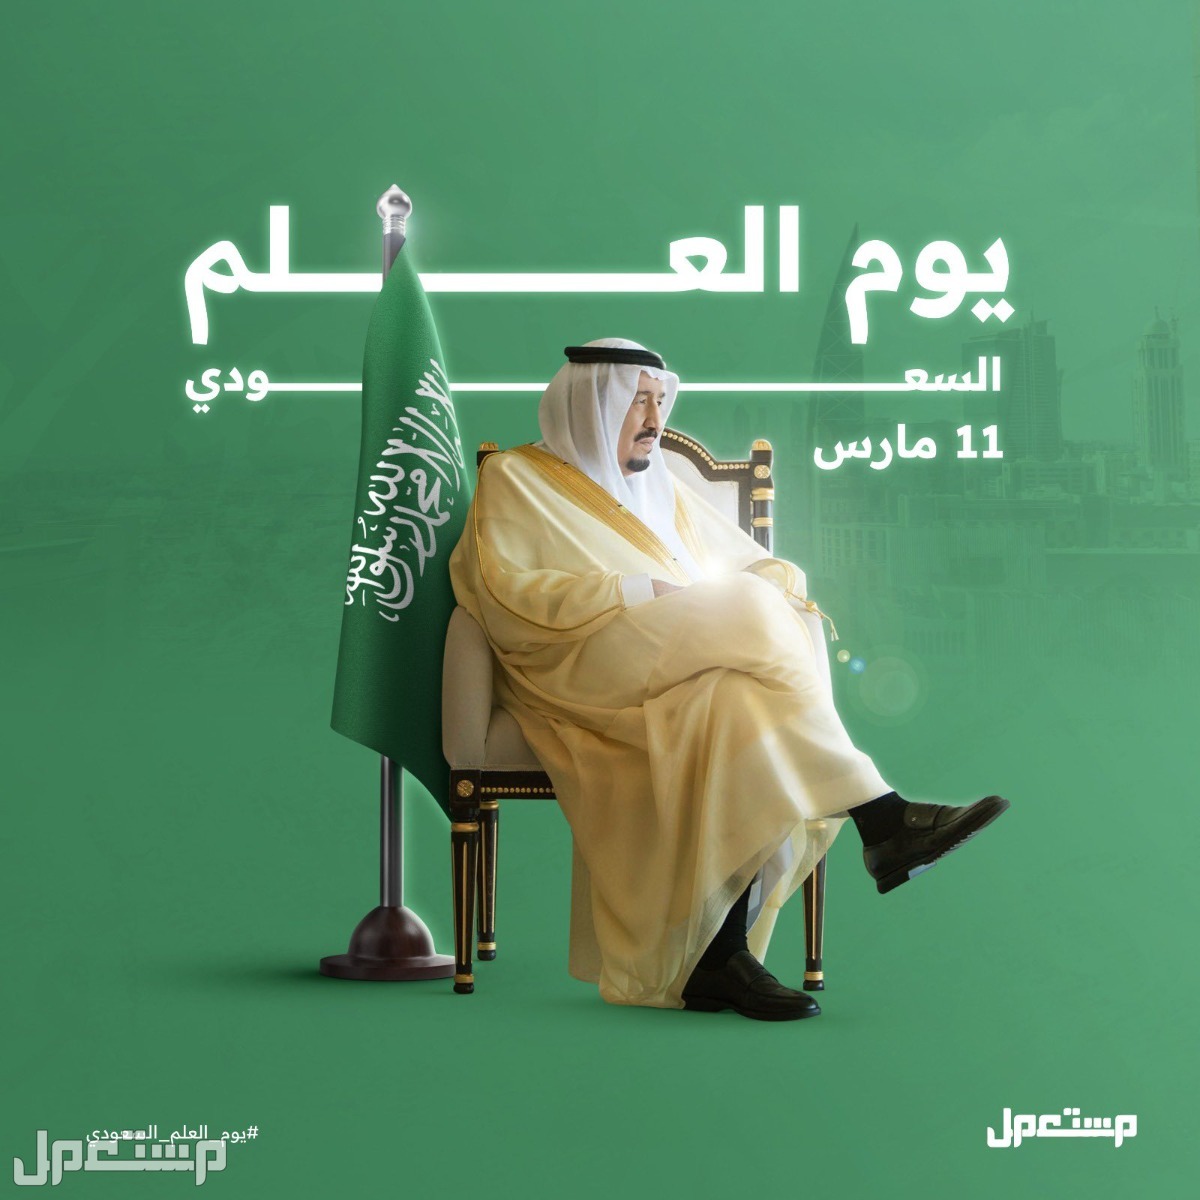 جدول فعاليات الاحتفال بيوم العلم السعودي في المدارس وإدارات التعليم في الكويت